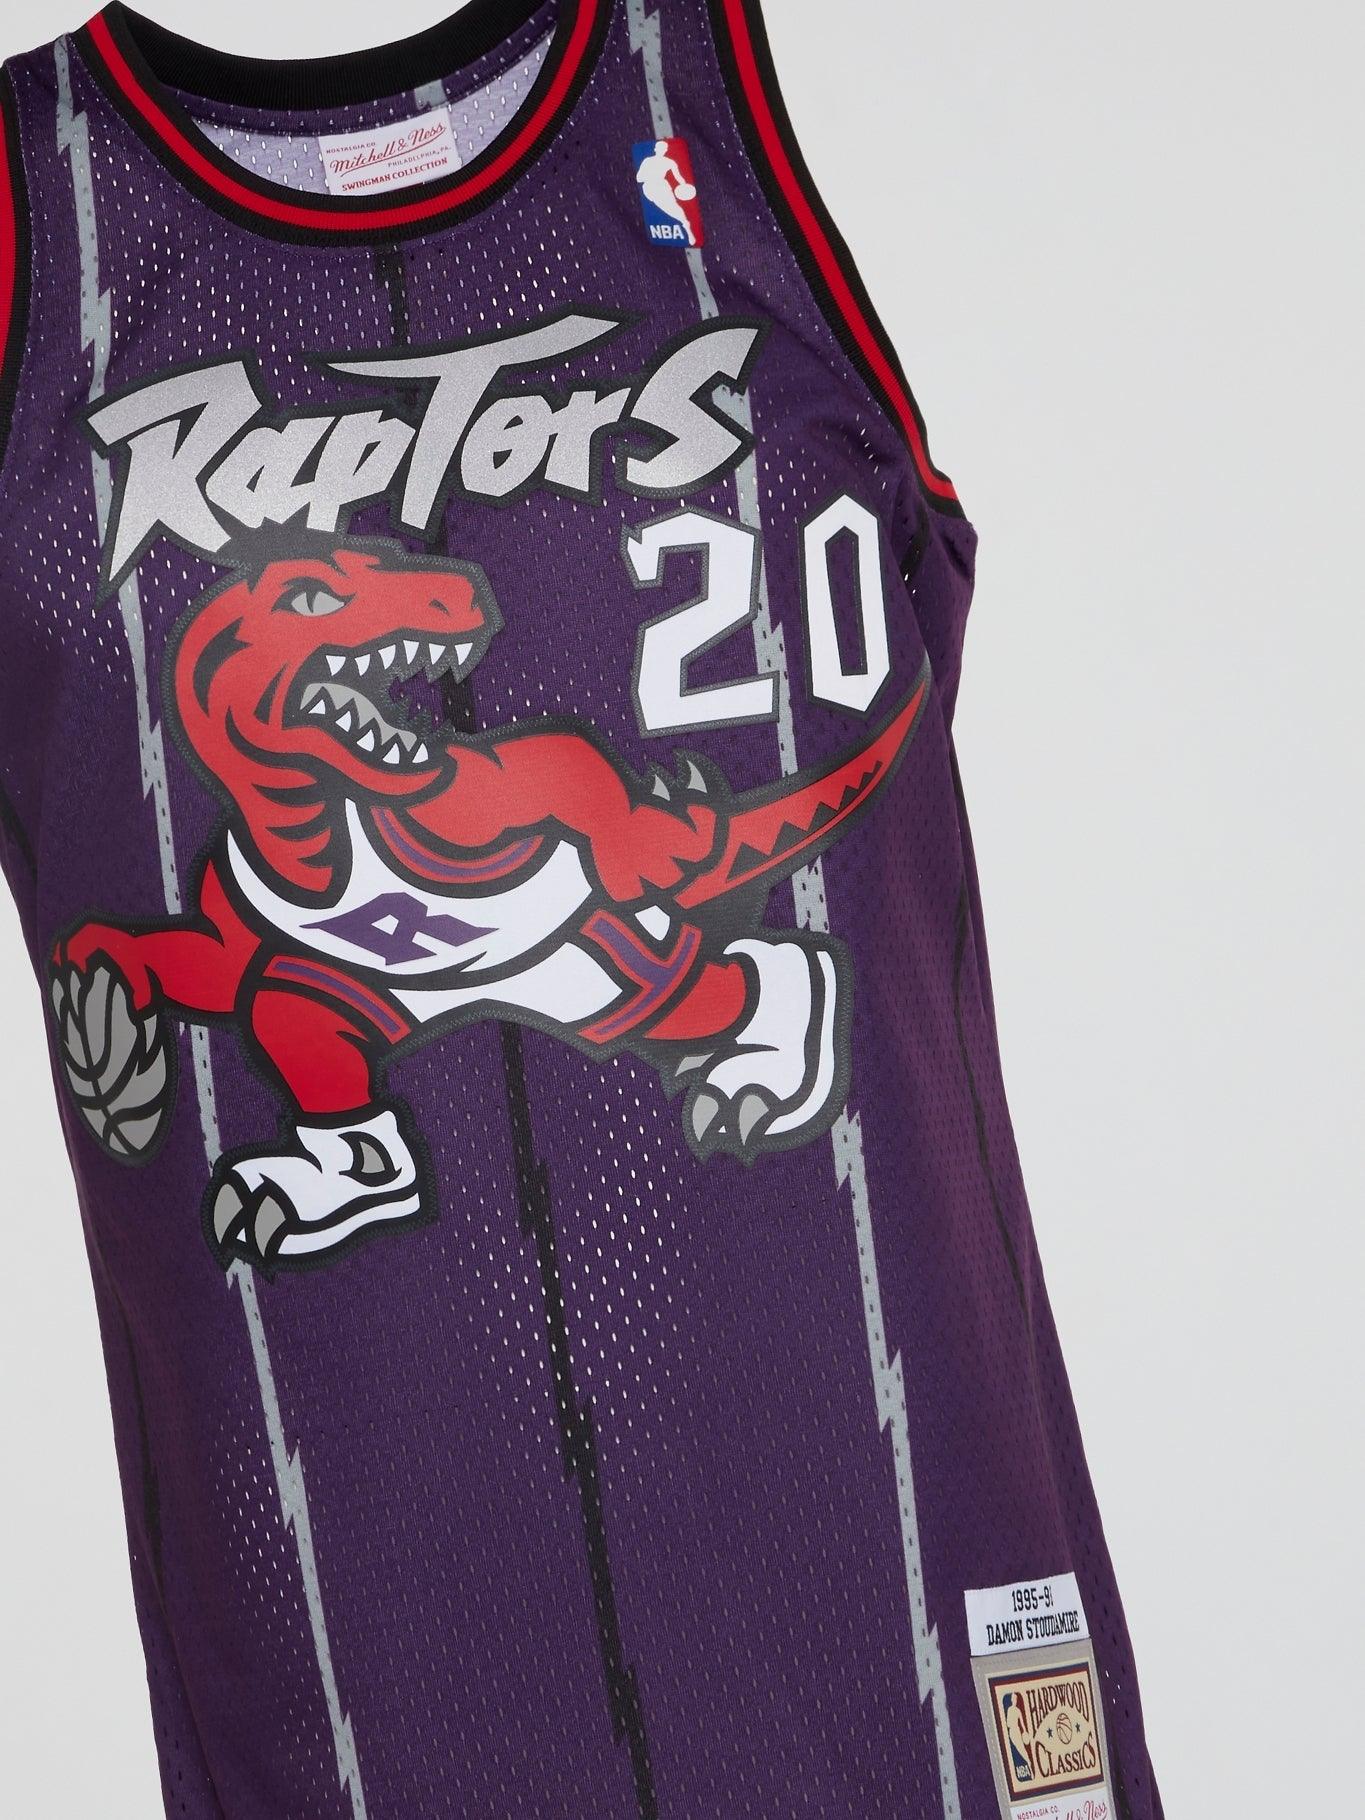 1995 raptors jersey